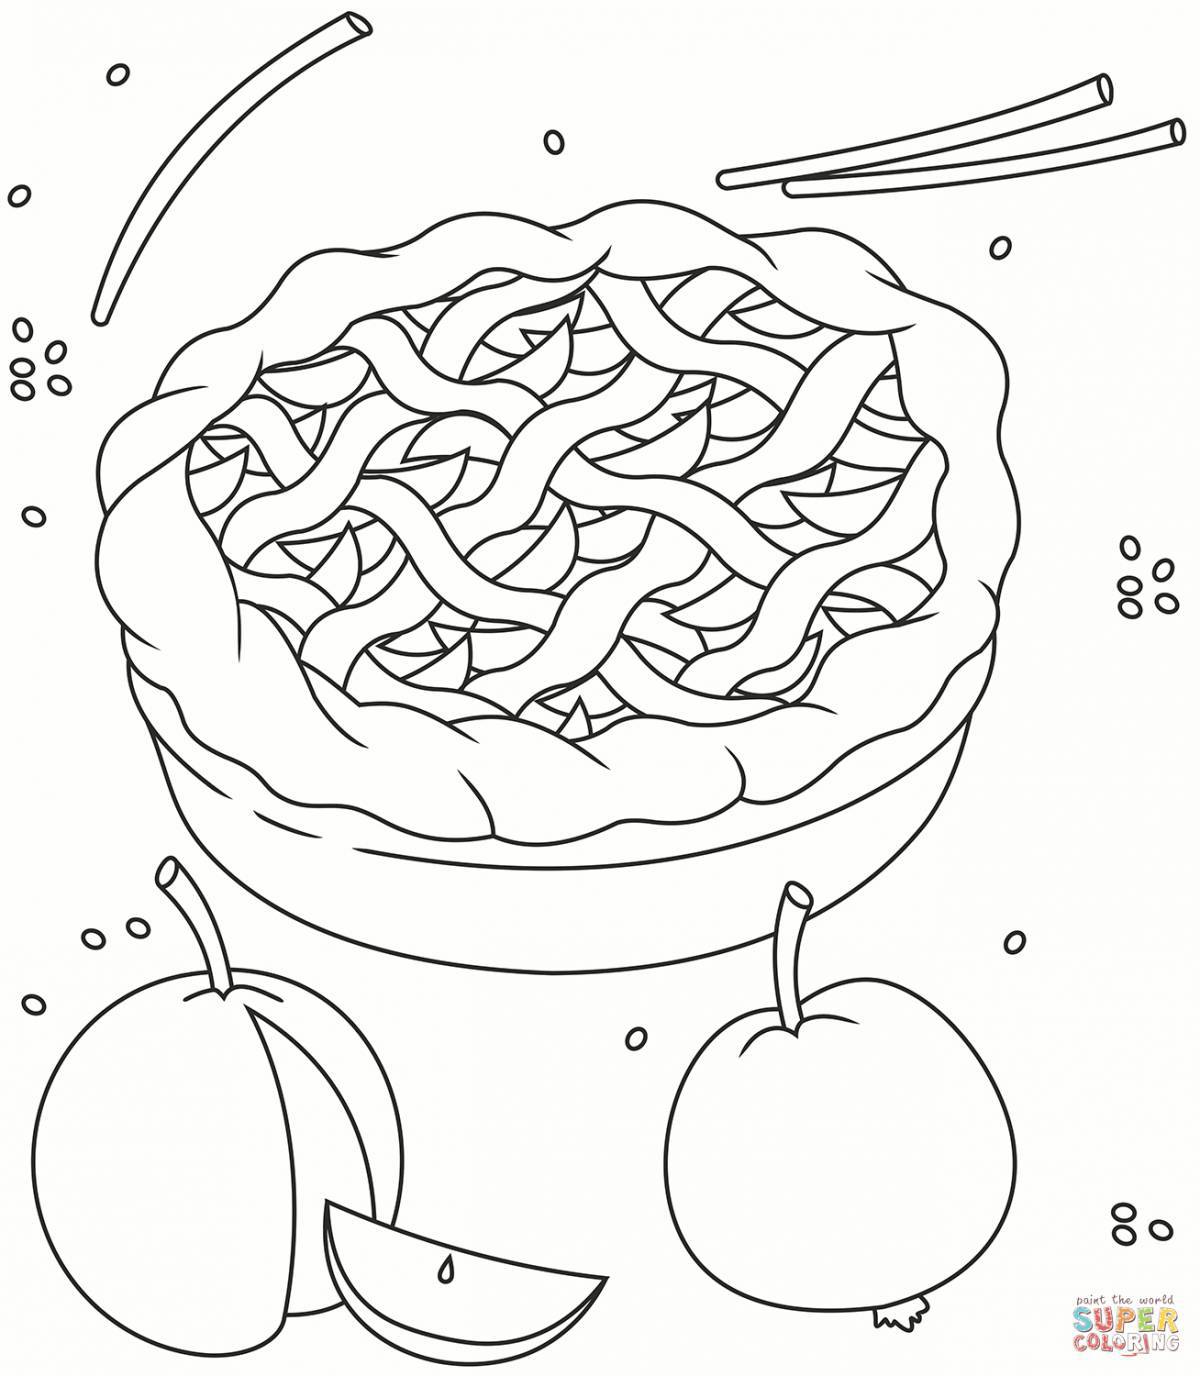 Delicious pie coloring page